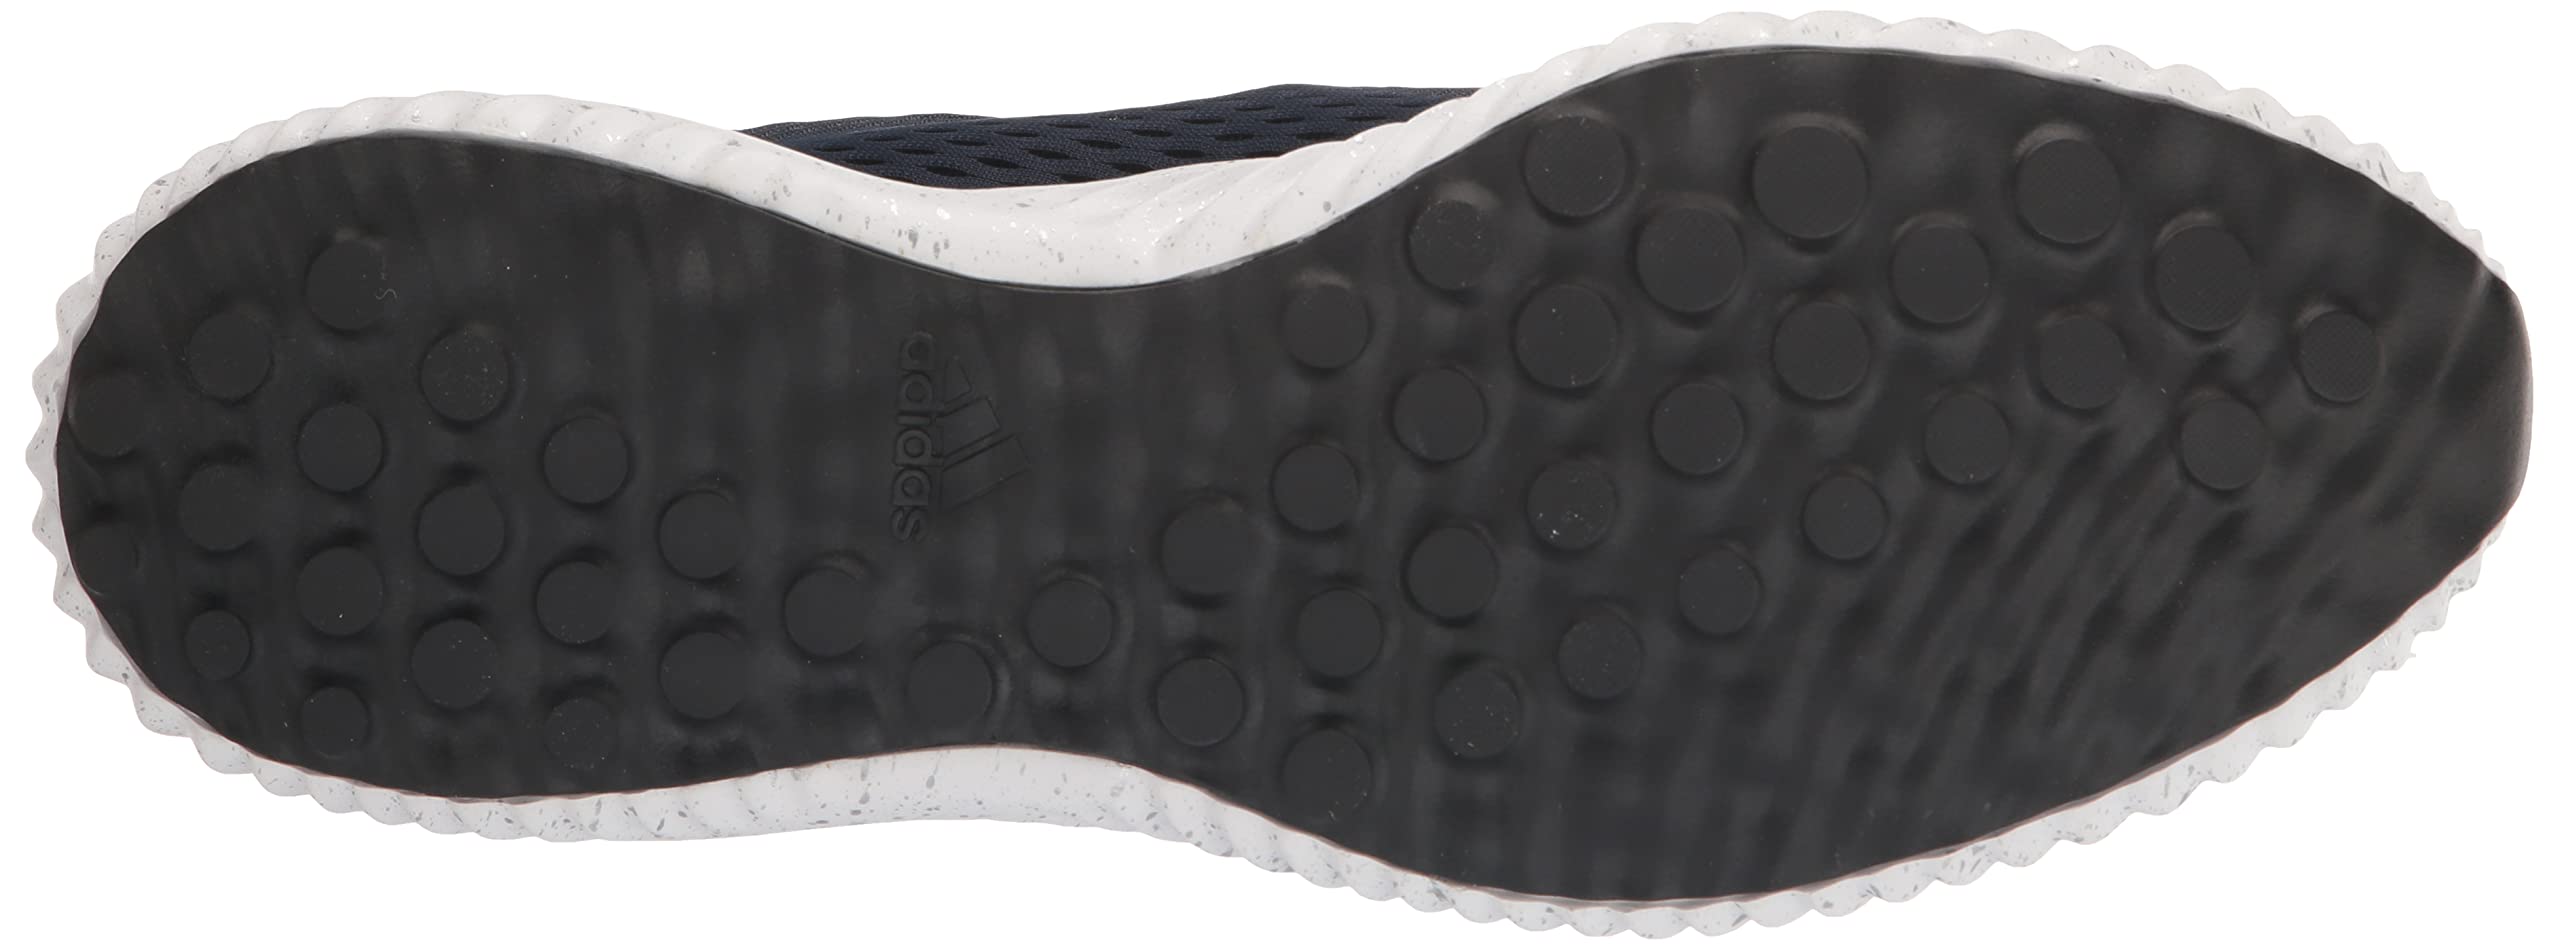 adidas Men's Alphabounce 1 Running Shoe